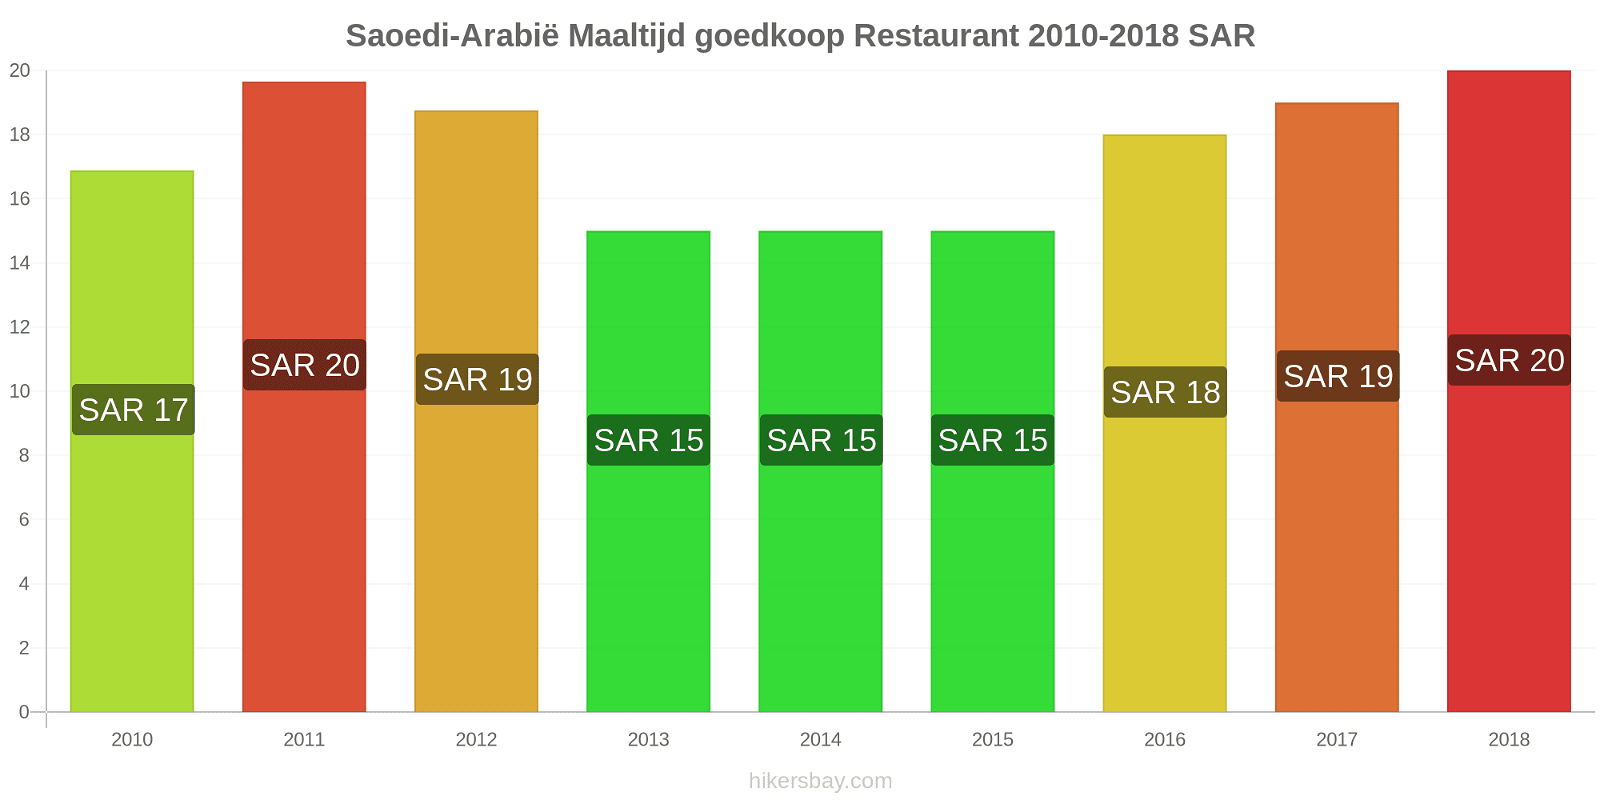 Saoedi-Arabië prijswijzigingen Maaltijd in een goedkoop restaurant hikersbay.com